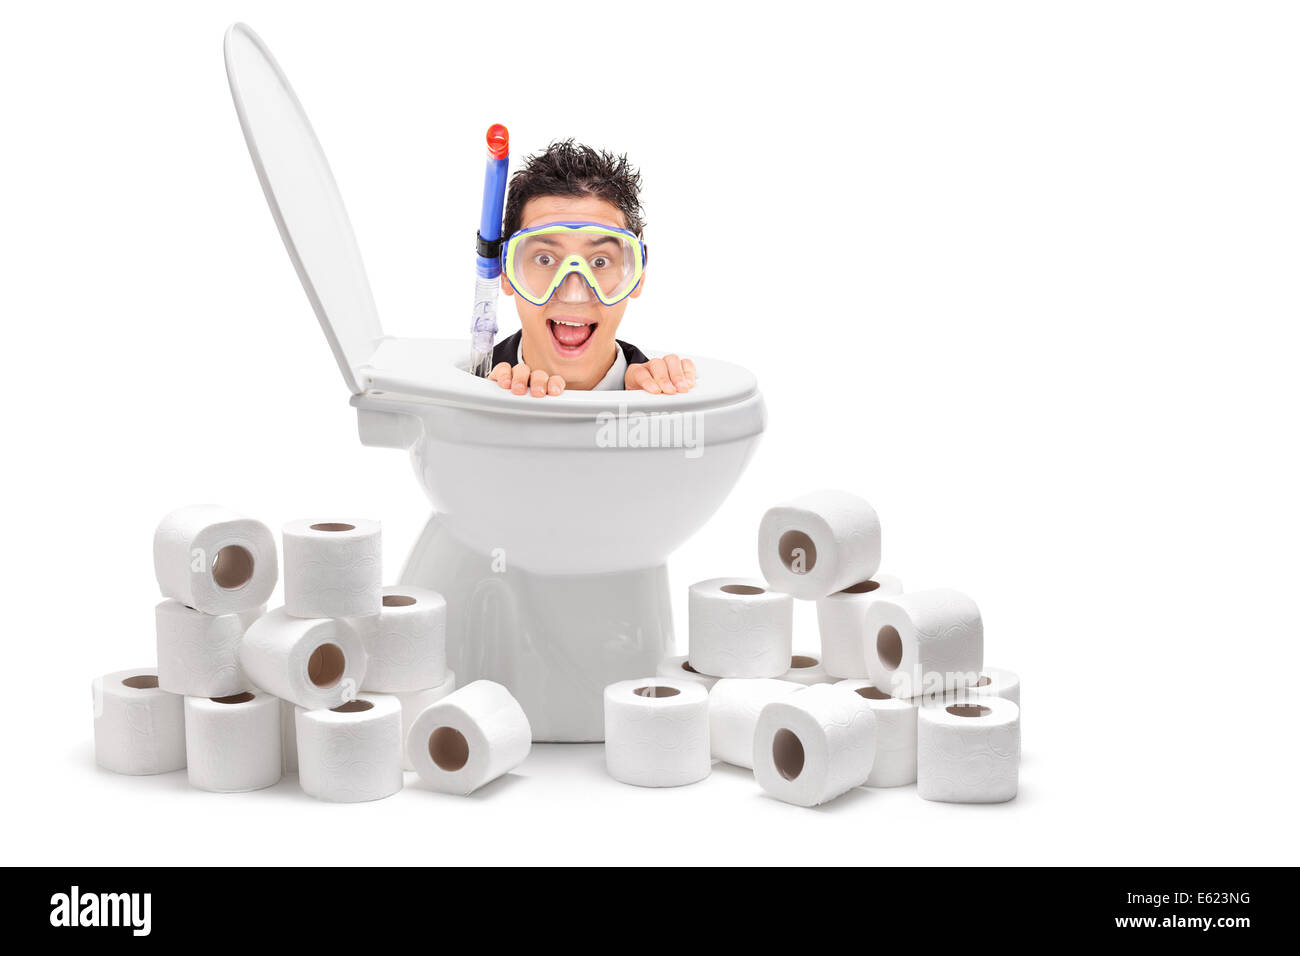 Mann mit Tauchmaske aus einer Toilette mit WC-Papier um ihn herum Stockfoto